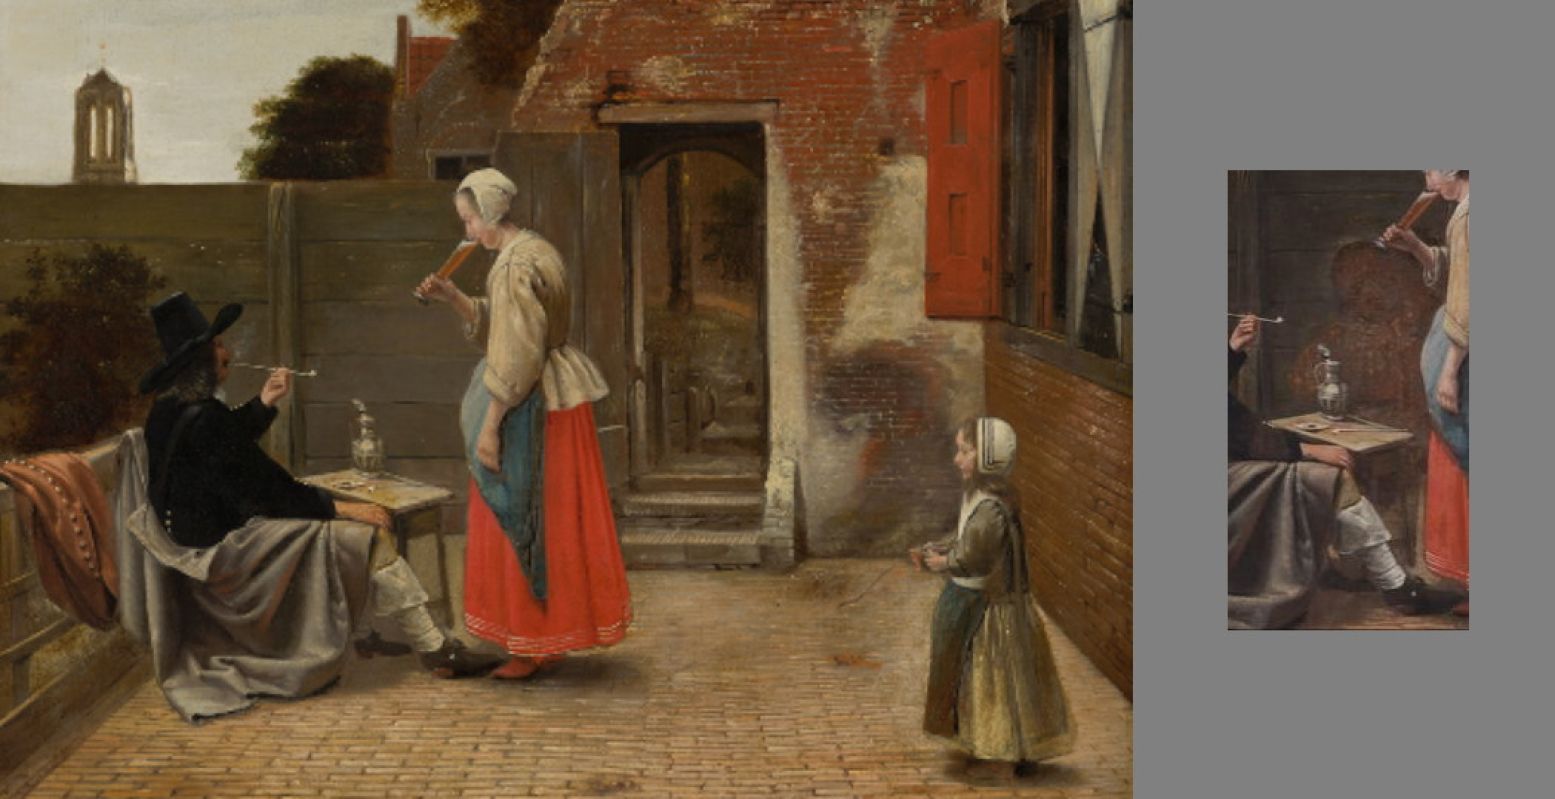 Pieter de Hooch (1629-1684), Een binnenplaats met een rokende man en een drinkende vrouw, c.1658-1660, Doek, 78 x 65 cm. Schenking van de heer en mevrouw Ten Cate-van Wulfften Palthe, 1947. In restauratie, gestart 2020. Foto: Mauritshuis